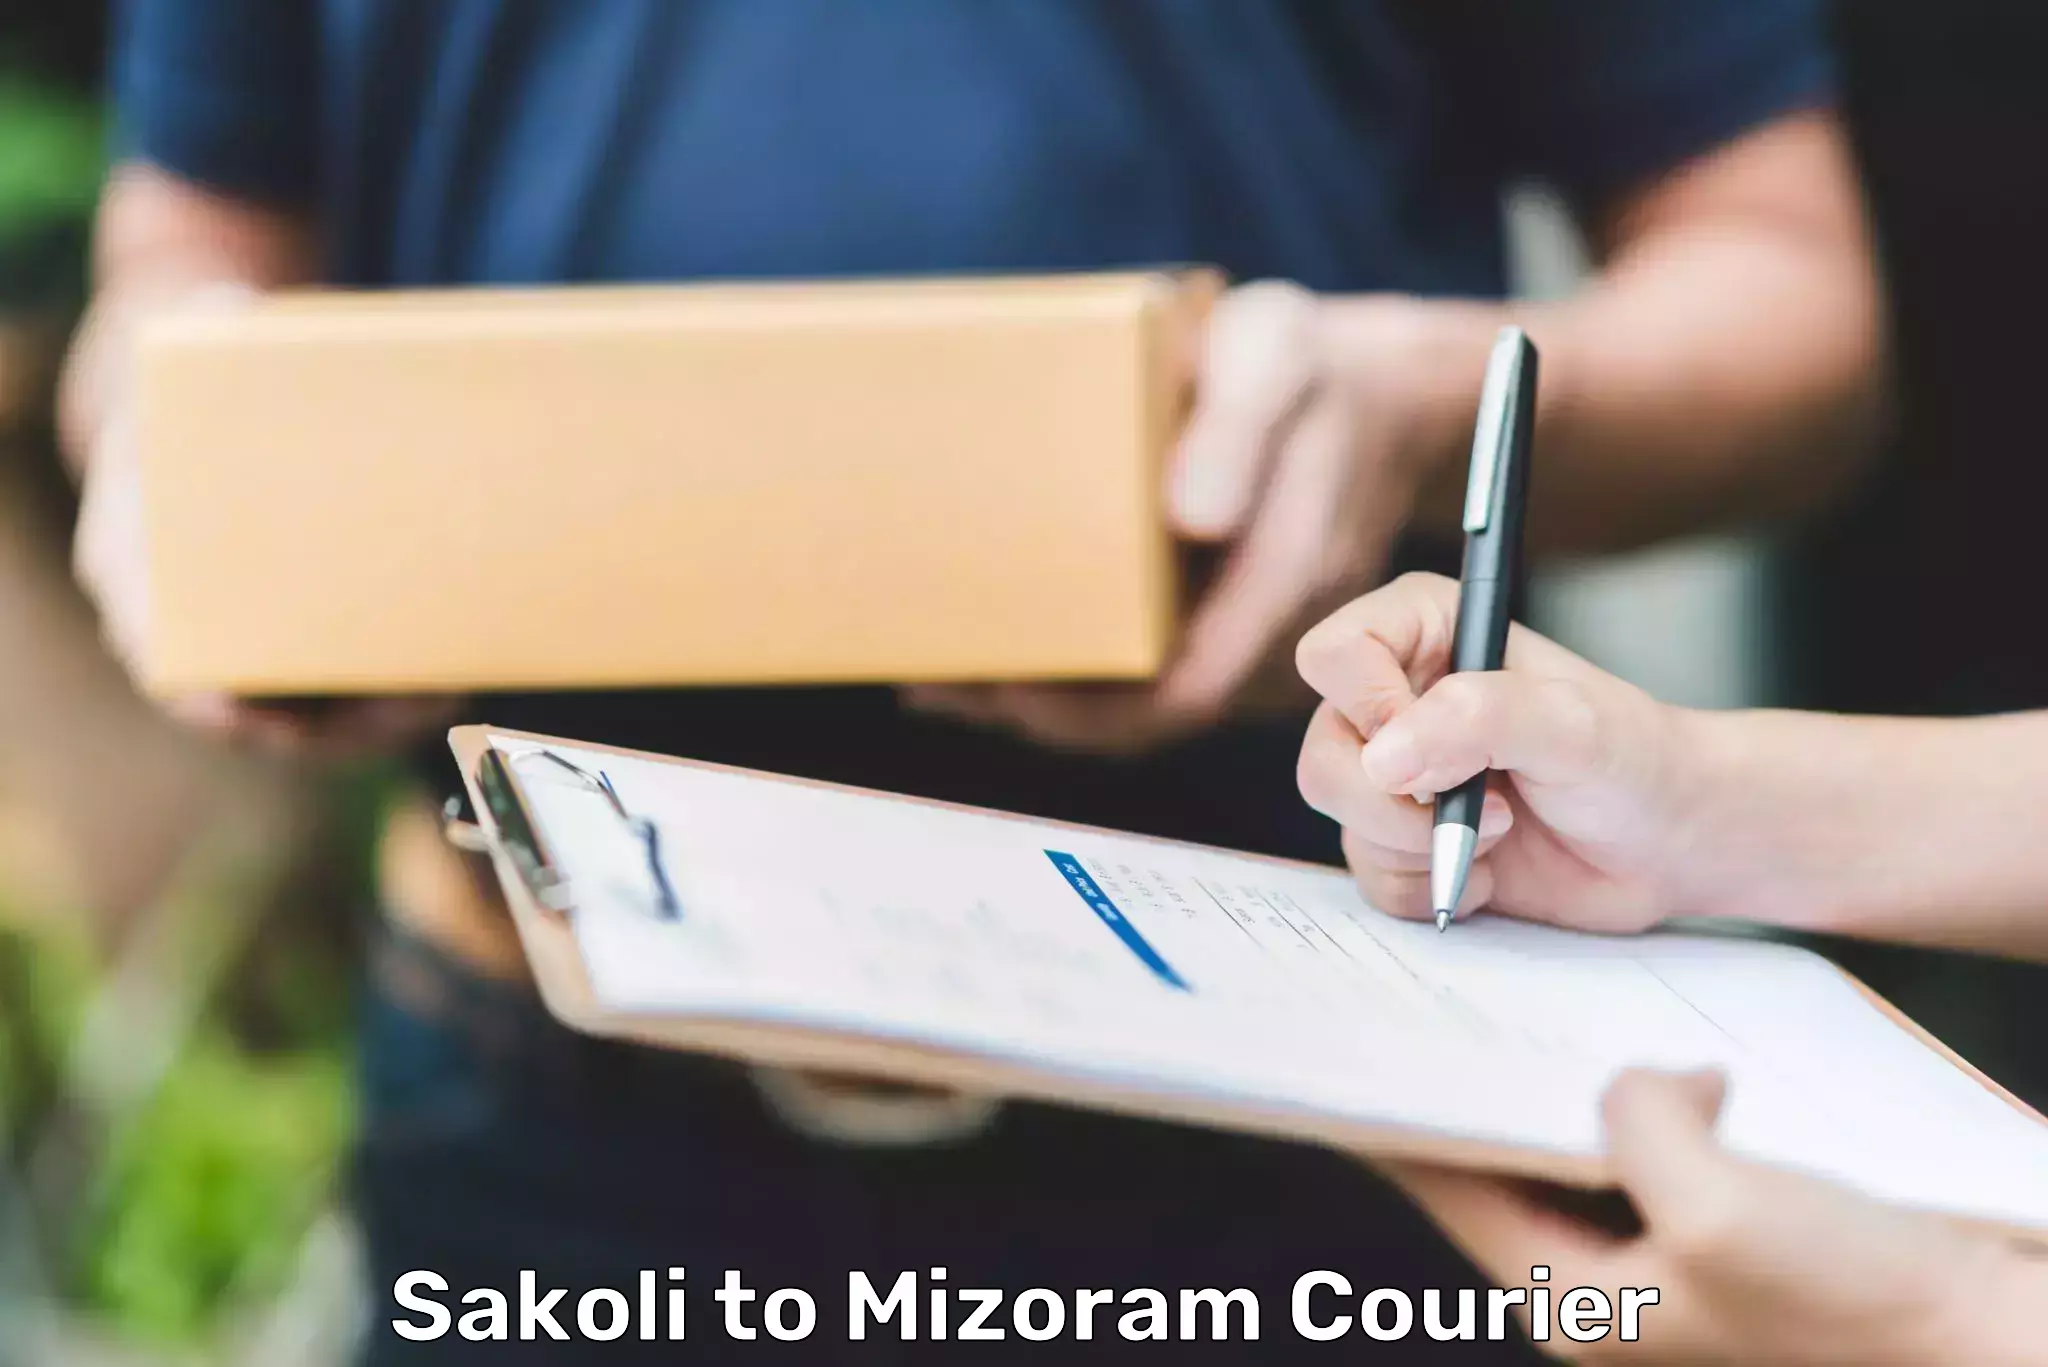 Courier service comparison in Sakoli to Darlawn